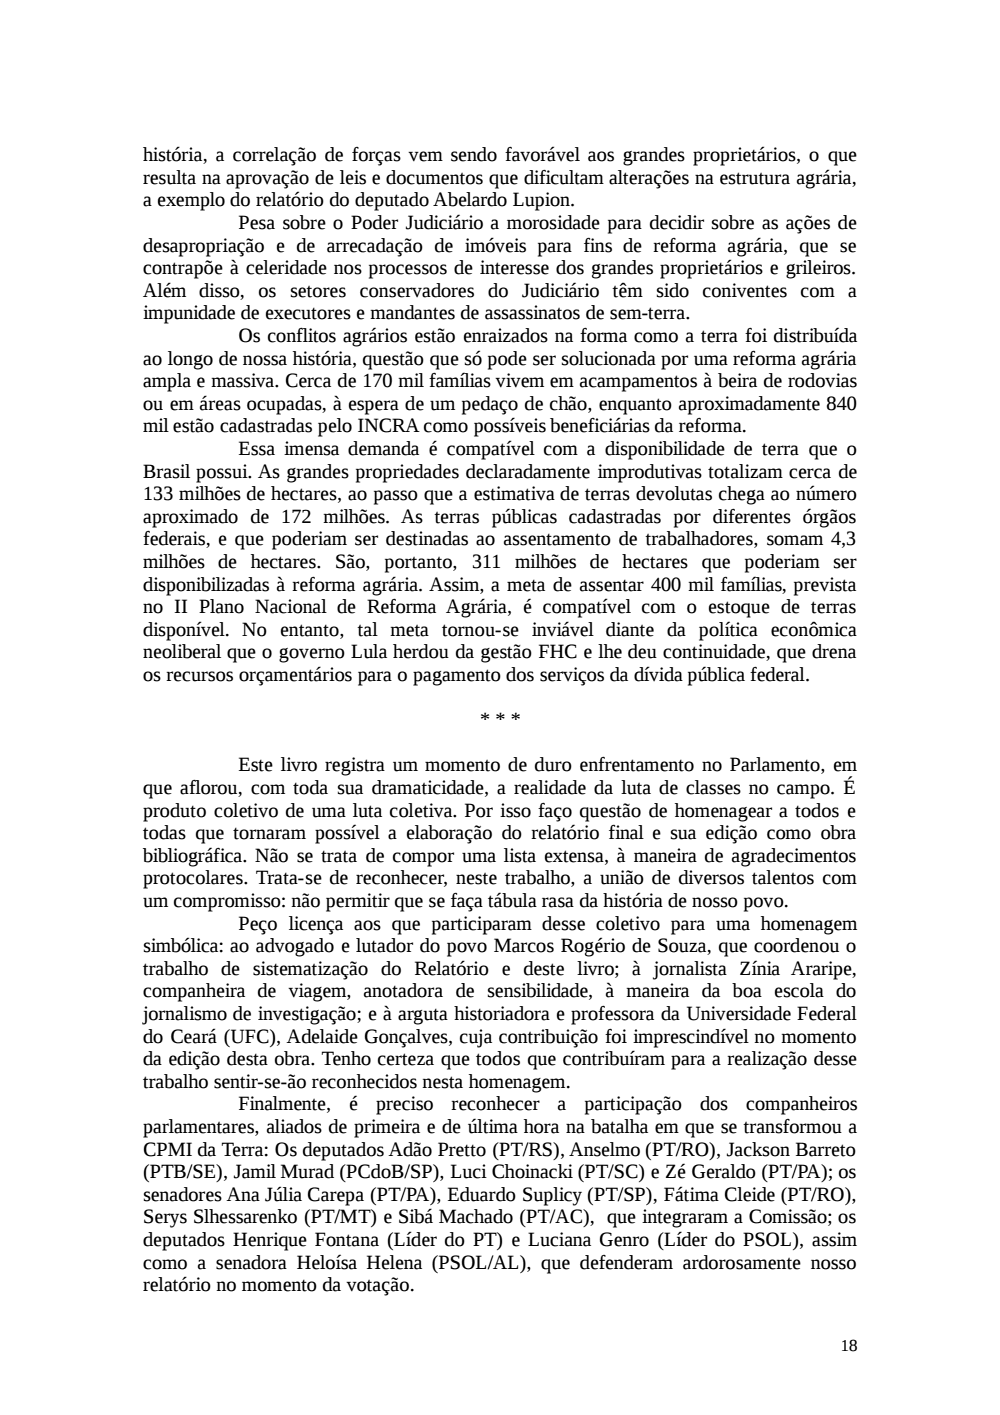 Page 18 from Relatório final da comissão